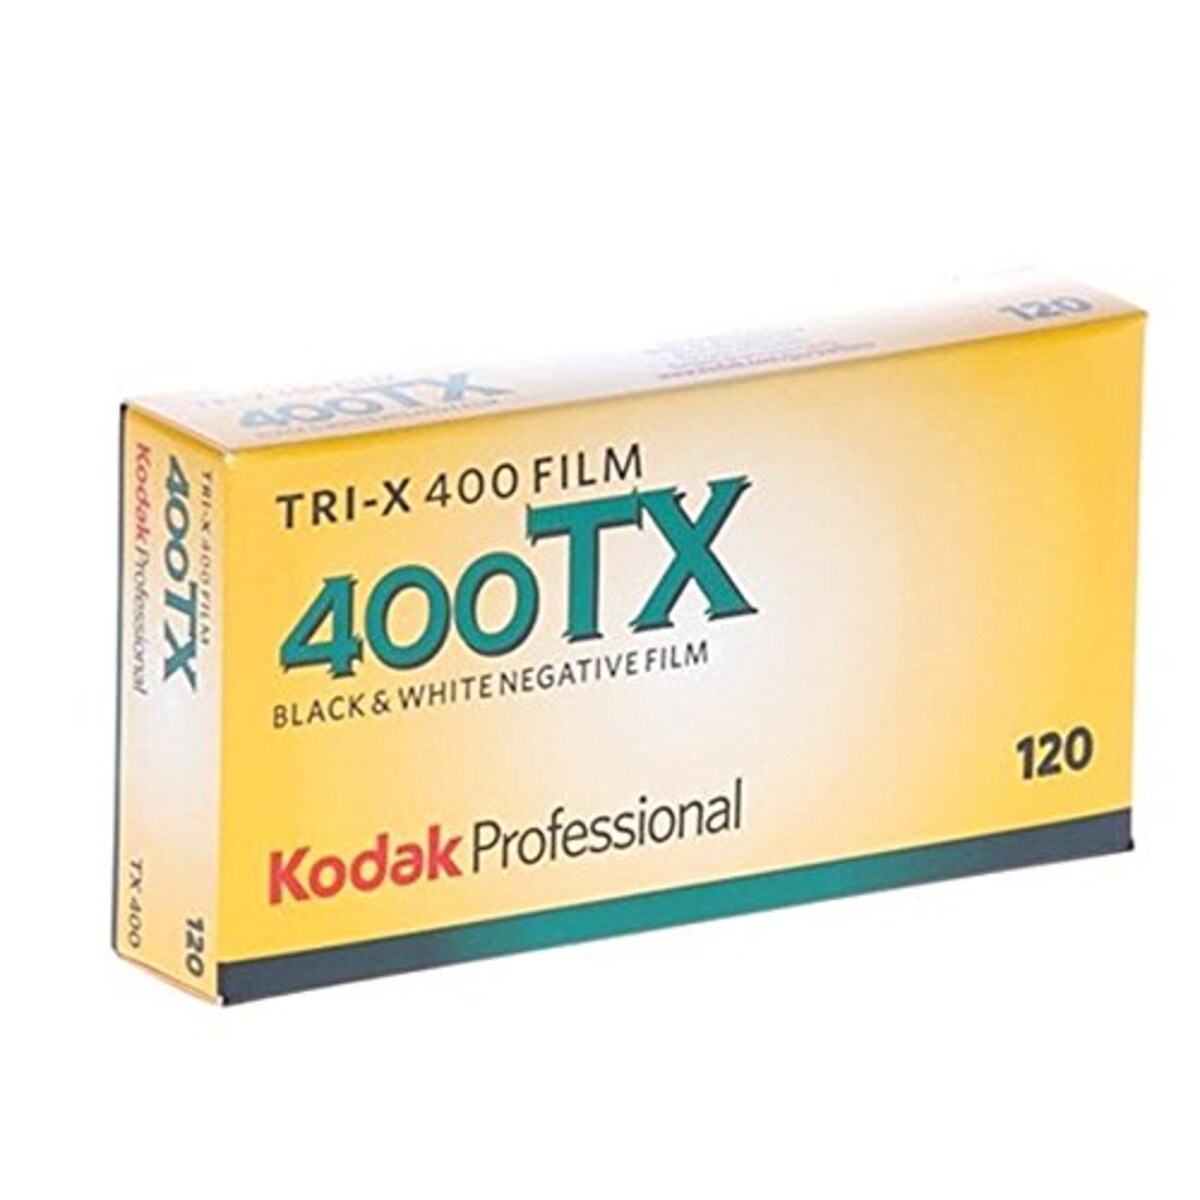 プロフェッショナル用 白黒フィルム トライ-X 400 120 5本パック 8568214